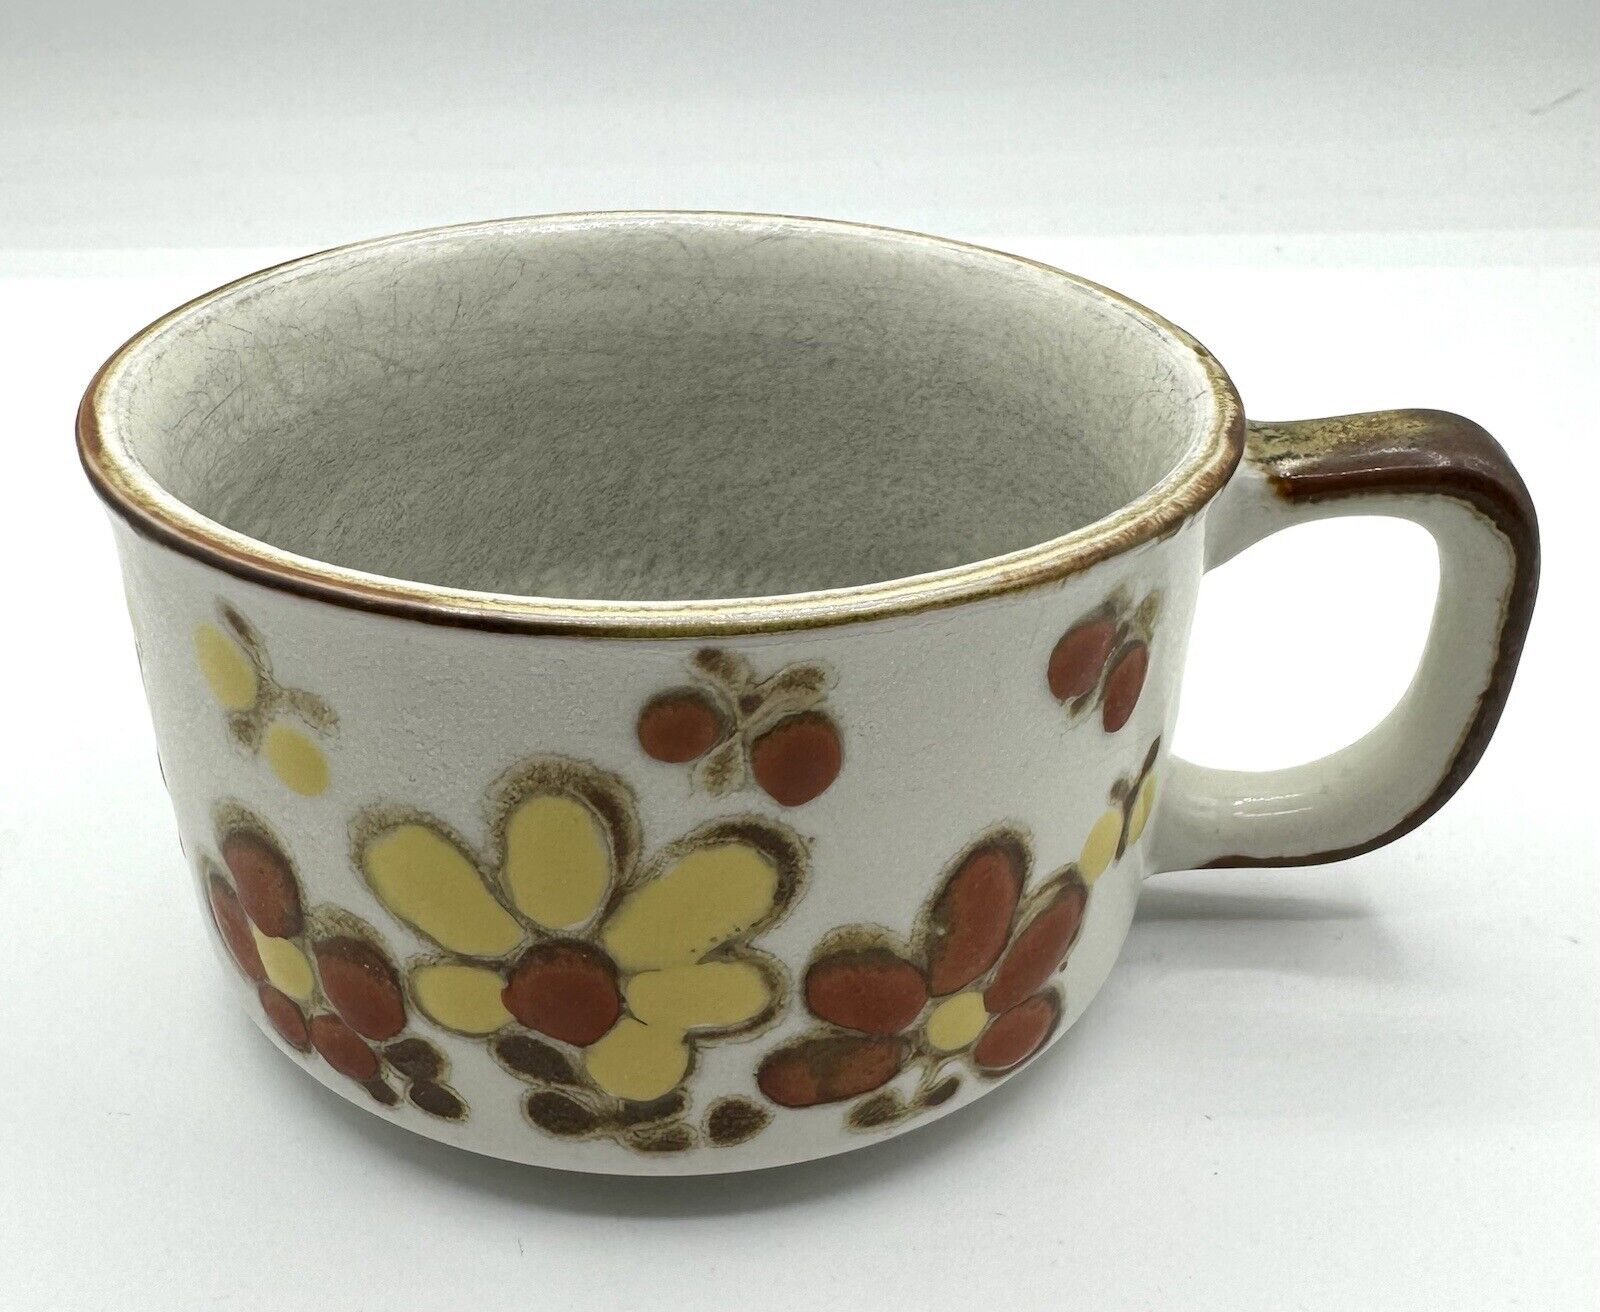 Otagari Style Vintage Dining Mug Soup Bowl Stoneware Floral Brown Orange Yellow